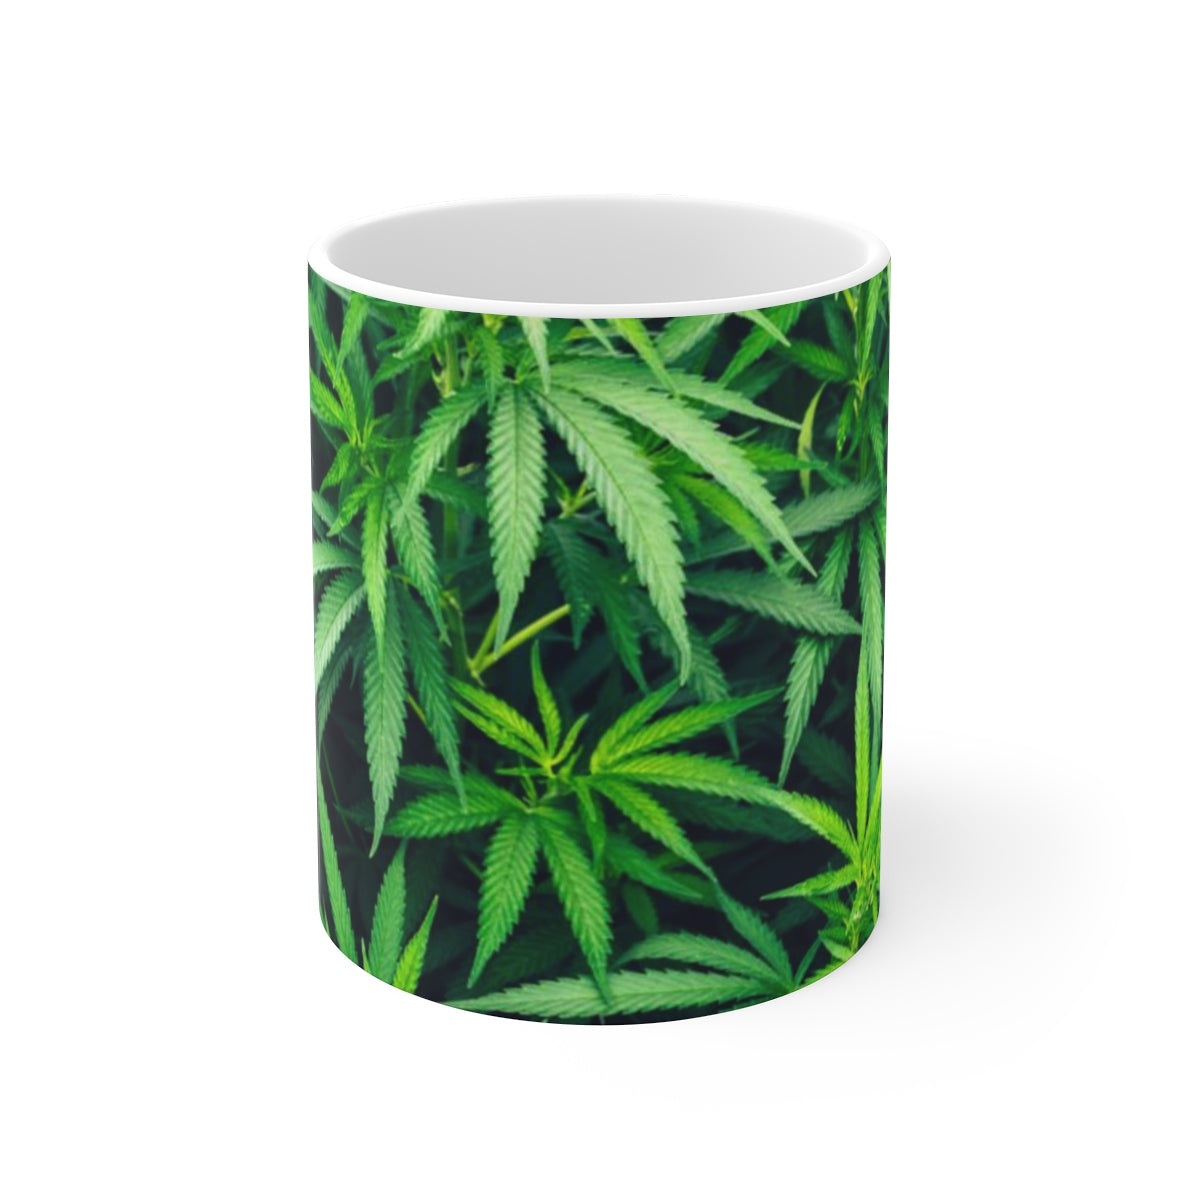 My Cannabis White Ceramic Mug